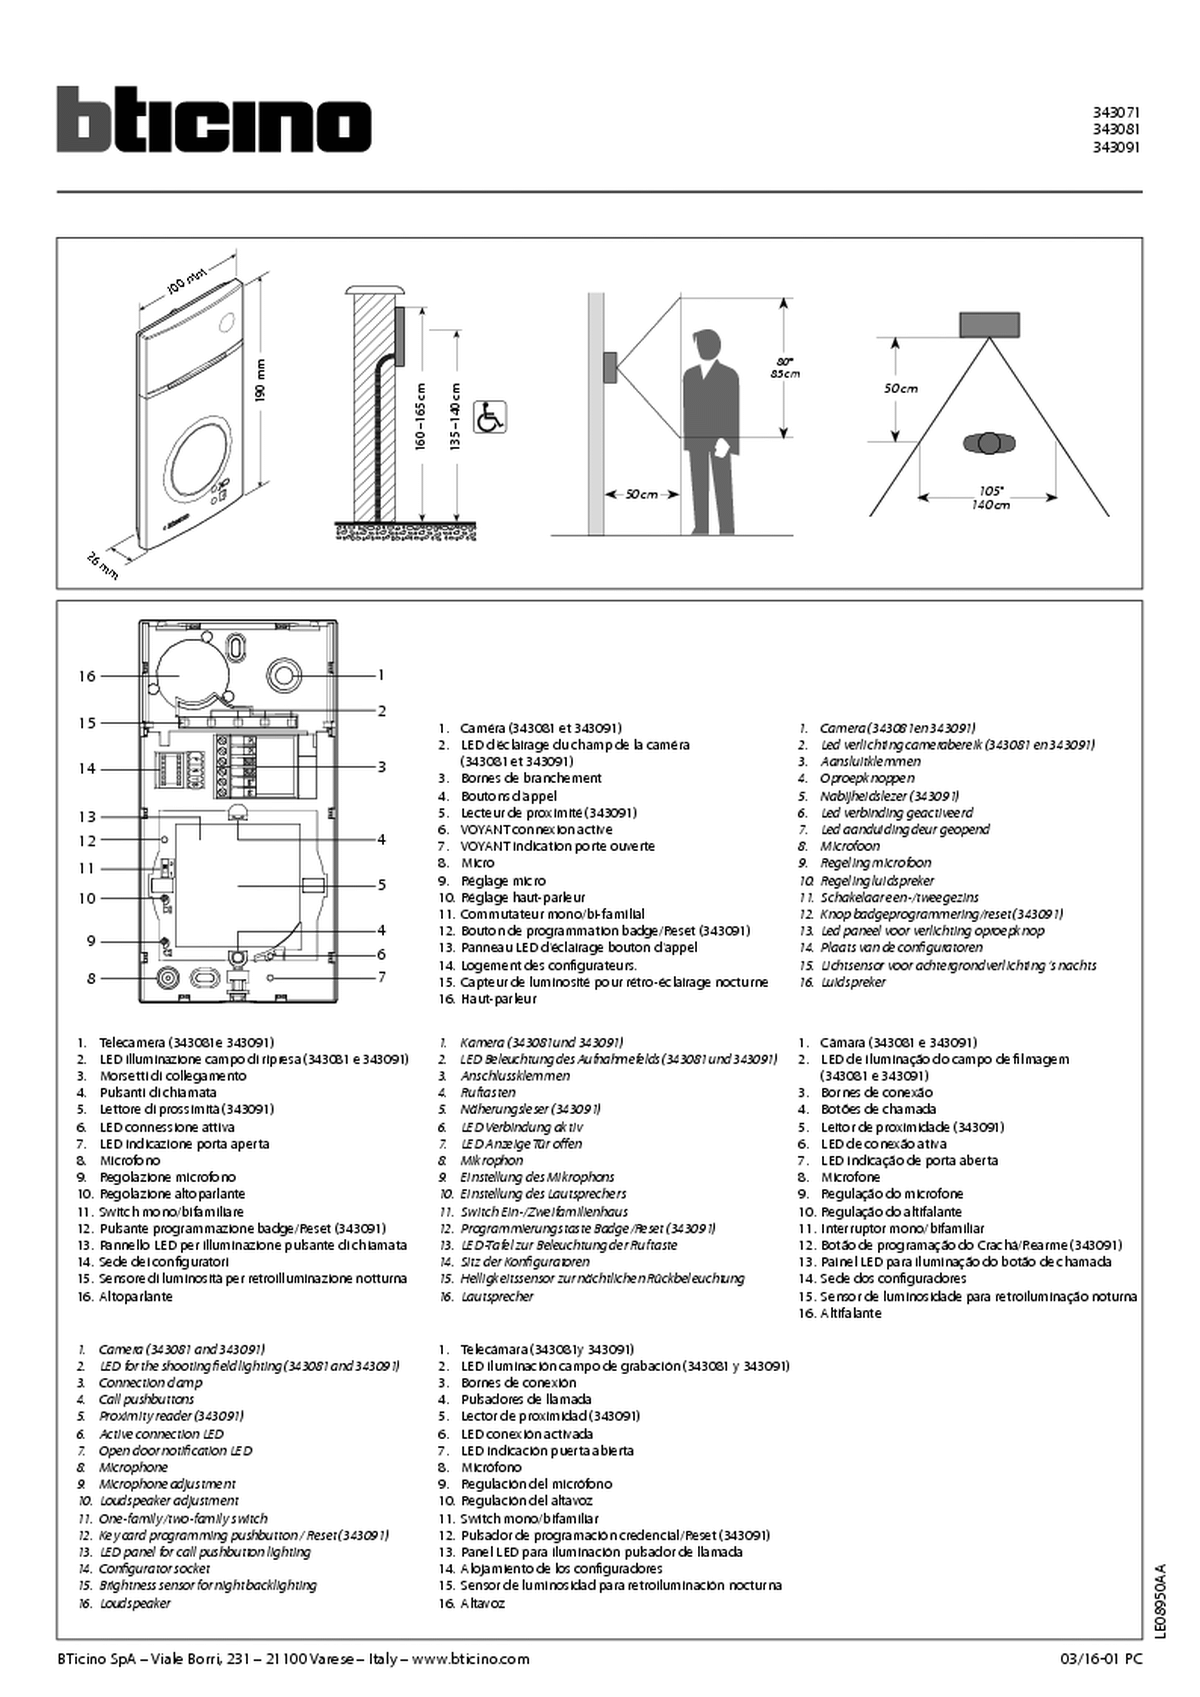 Fabrieksschema Serie 120